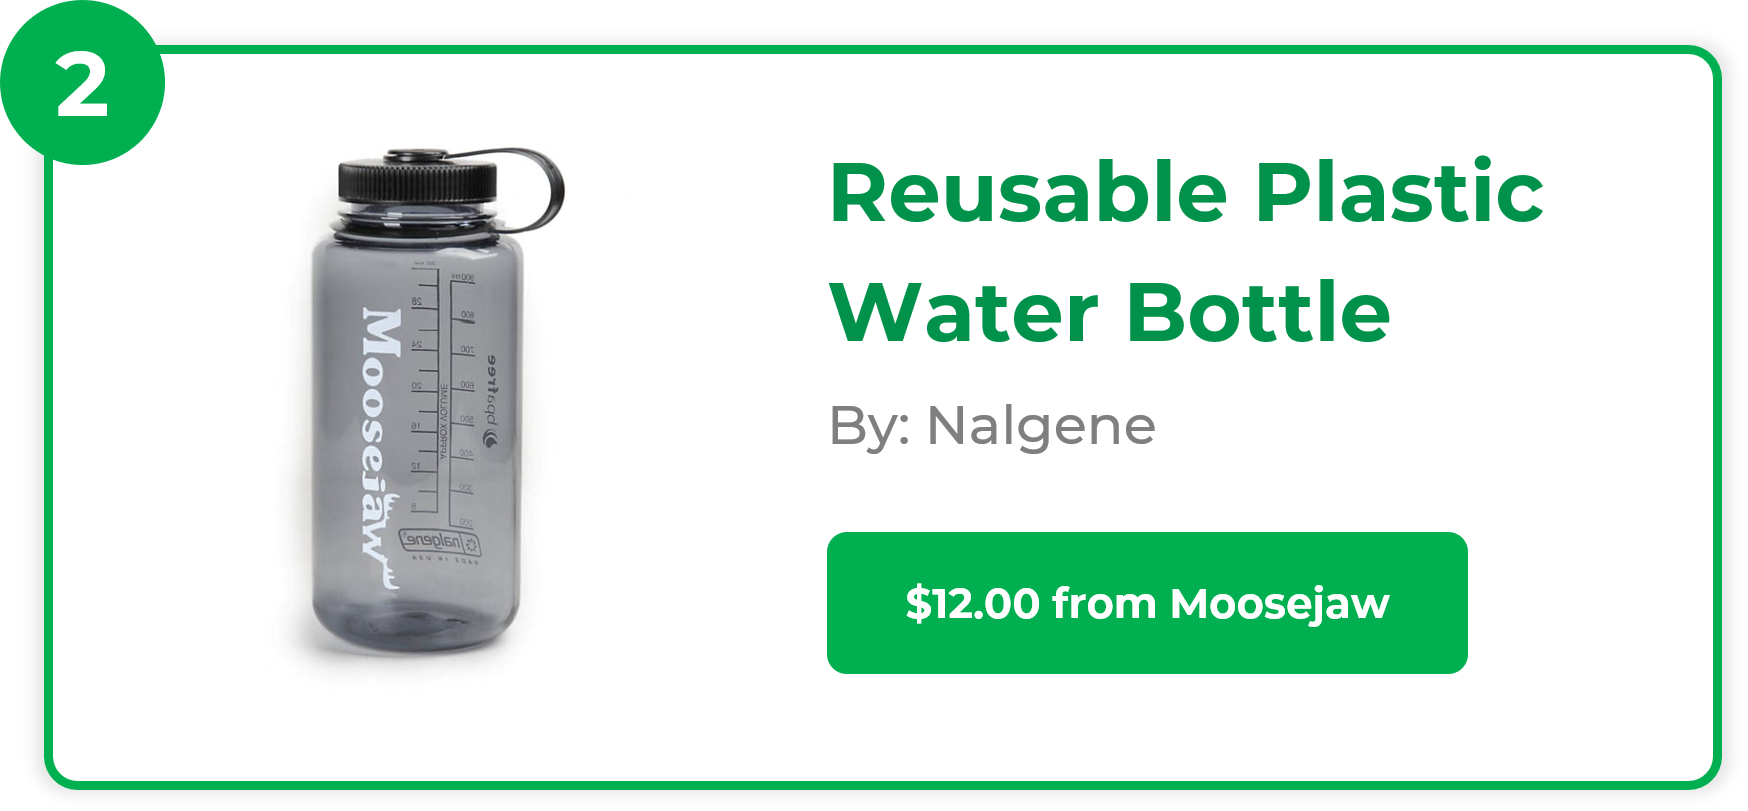 Reusable Plastic Water Bottle - Nalgene